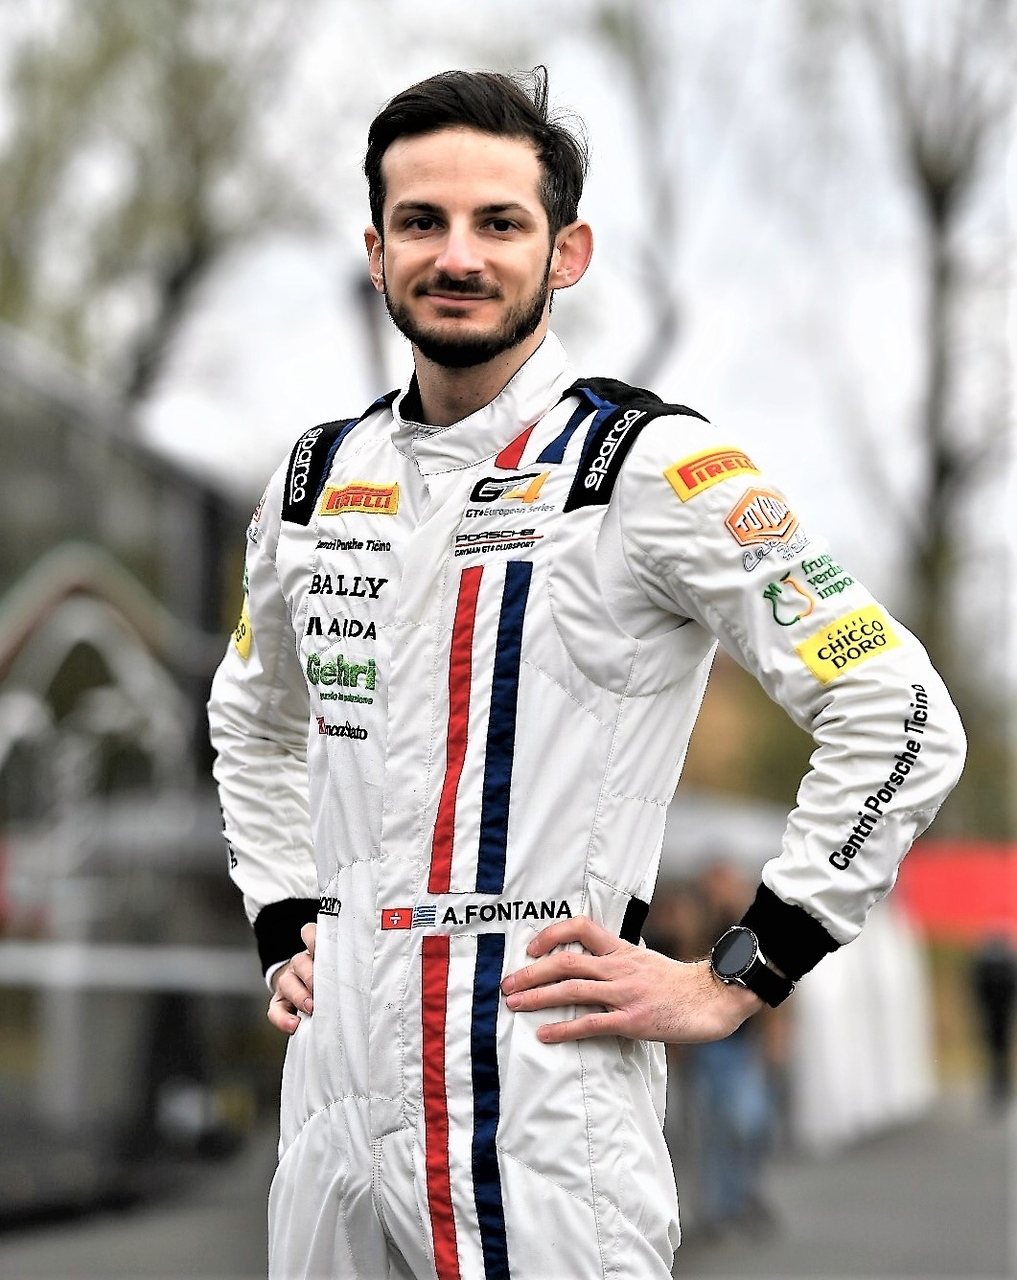 Alex Fontana: kierowca z Ticino, urodzony w Lugano 5 sierpnia 1992 r., zajmuje się komentowaniem technicznym Grand Prix Formuły 1 dla włoskojęzycznego szwajcarskiego radia i telewizji